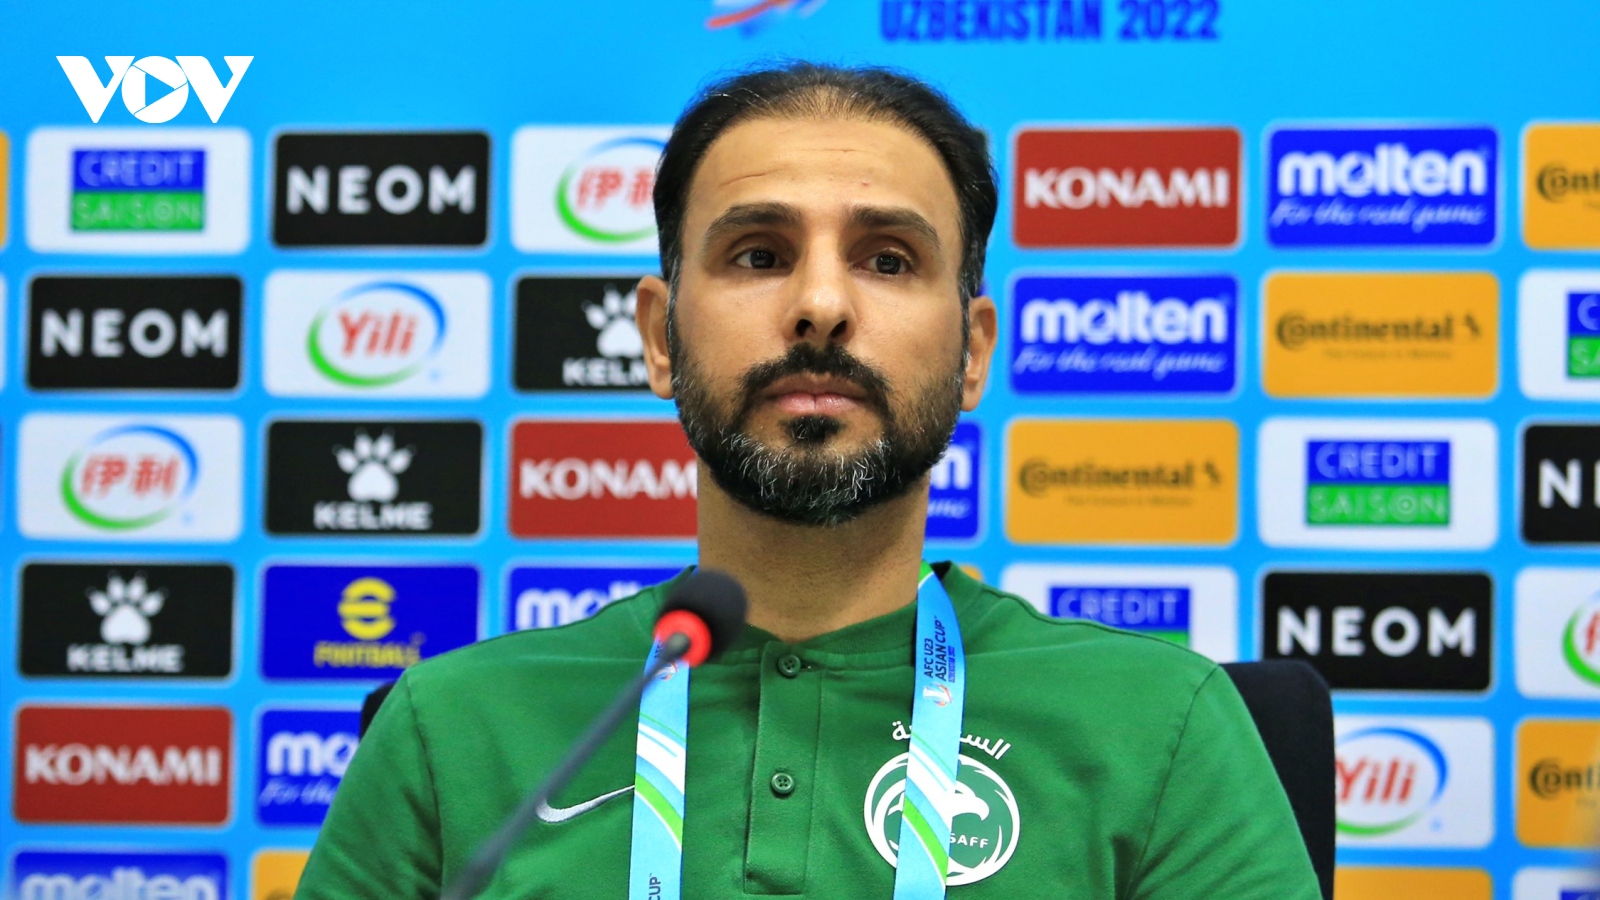 Huấn luyện viên của U23 Saudi Arabia phát biểu sốc về U23 Việt Nam